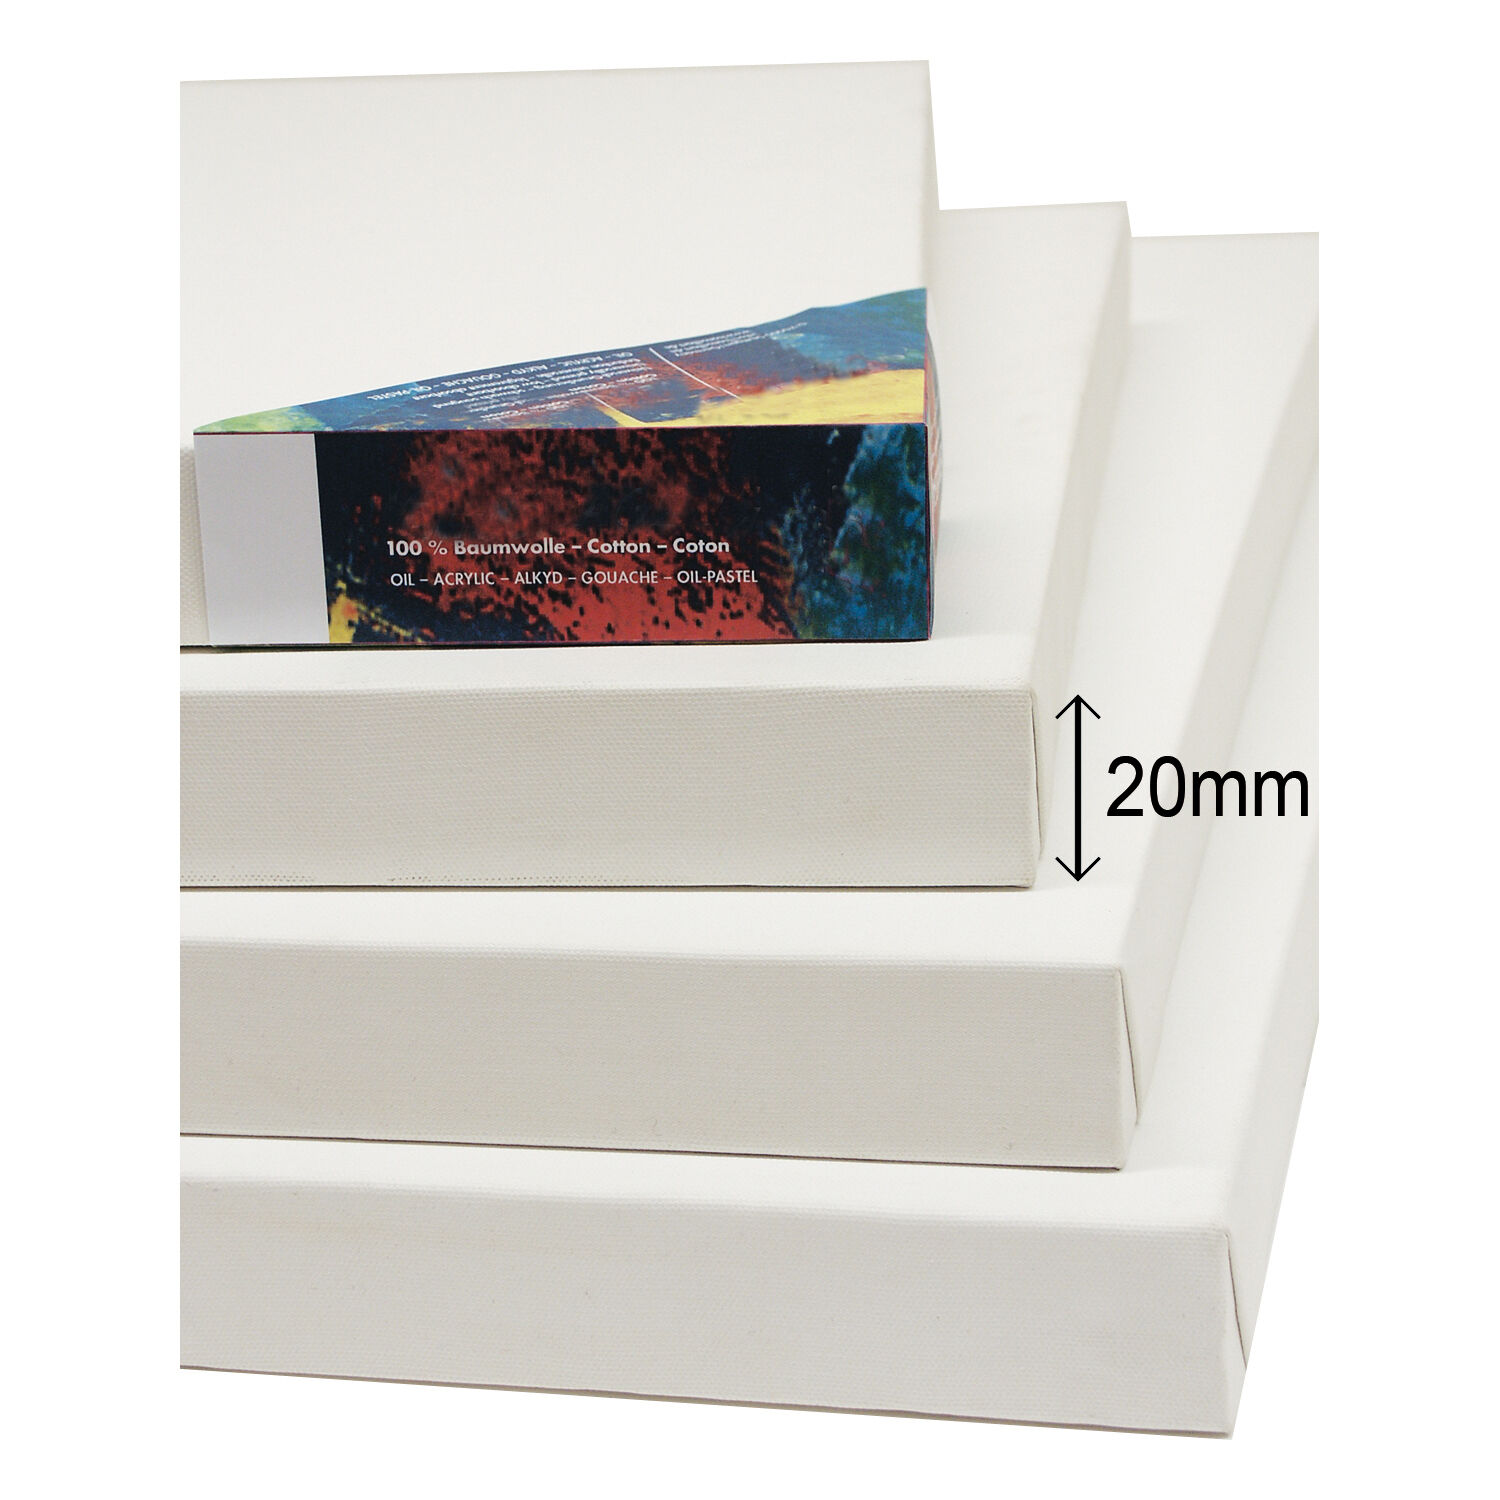 NEU Cotton 400 Premium-Keilrahmen Professionell 20mm Leistenstärke, 40 x 40 cm - 1 Stück